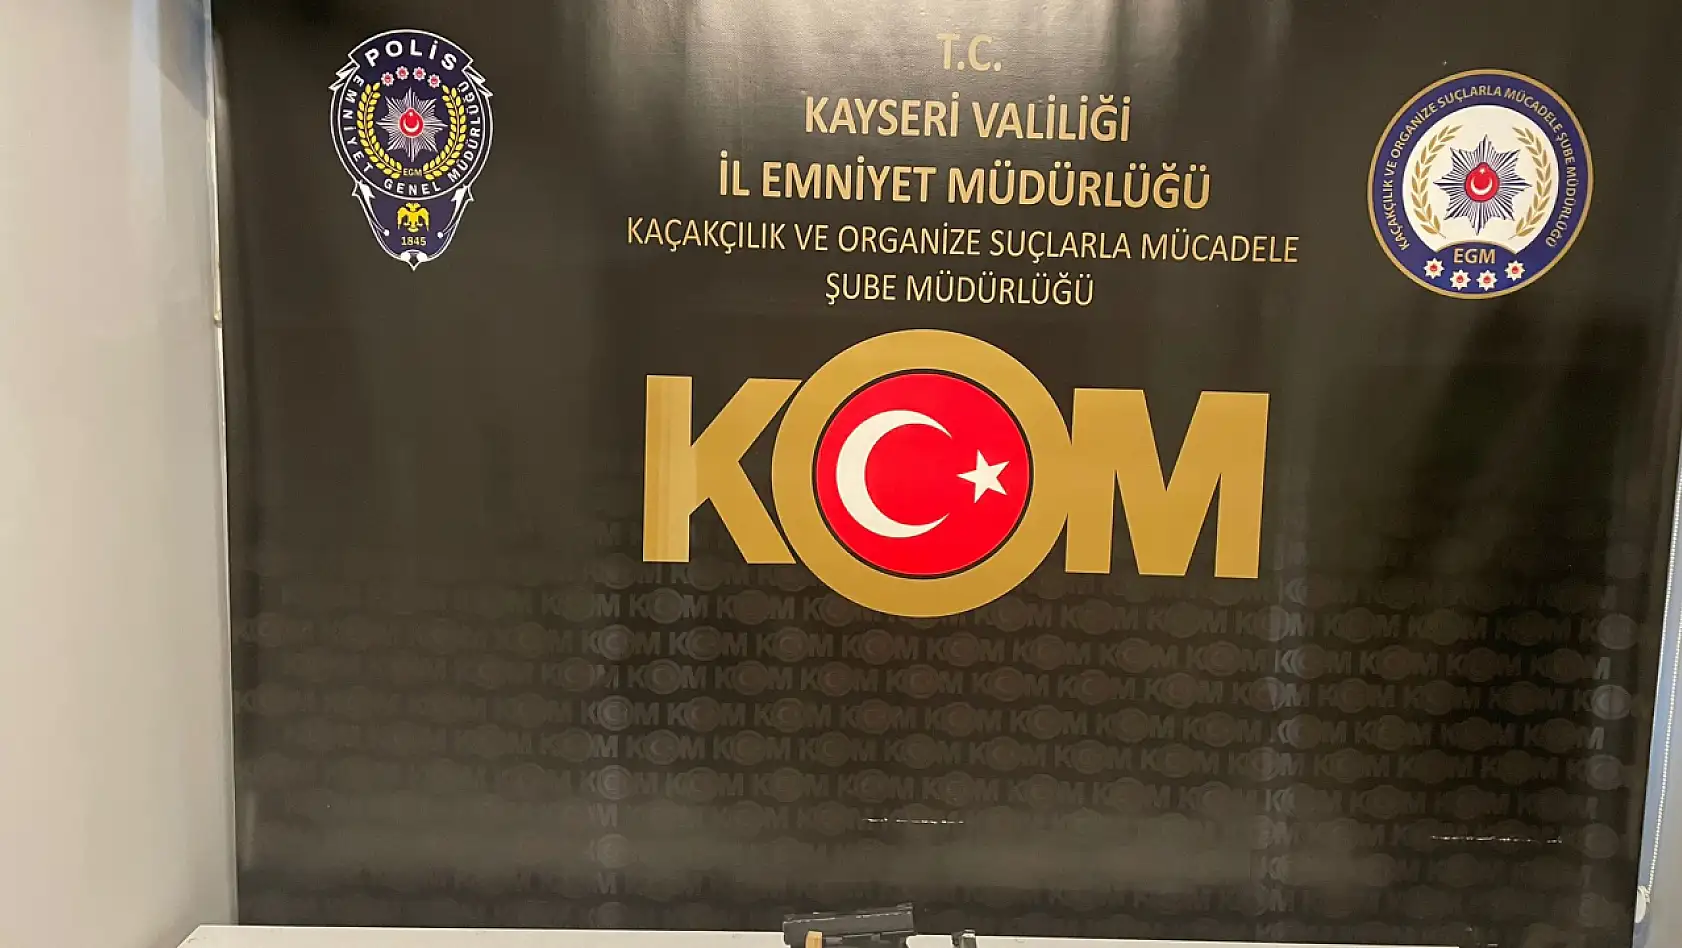 Kayseri'de 5 kaçakçılık olayında 22 şahıs yakalandı